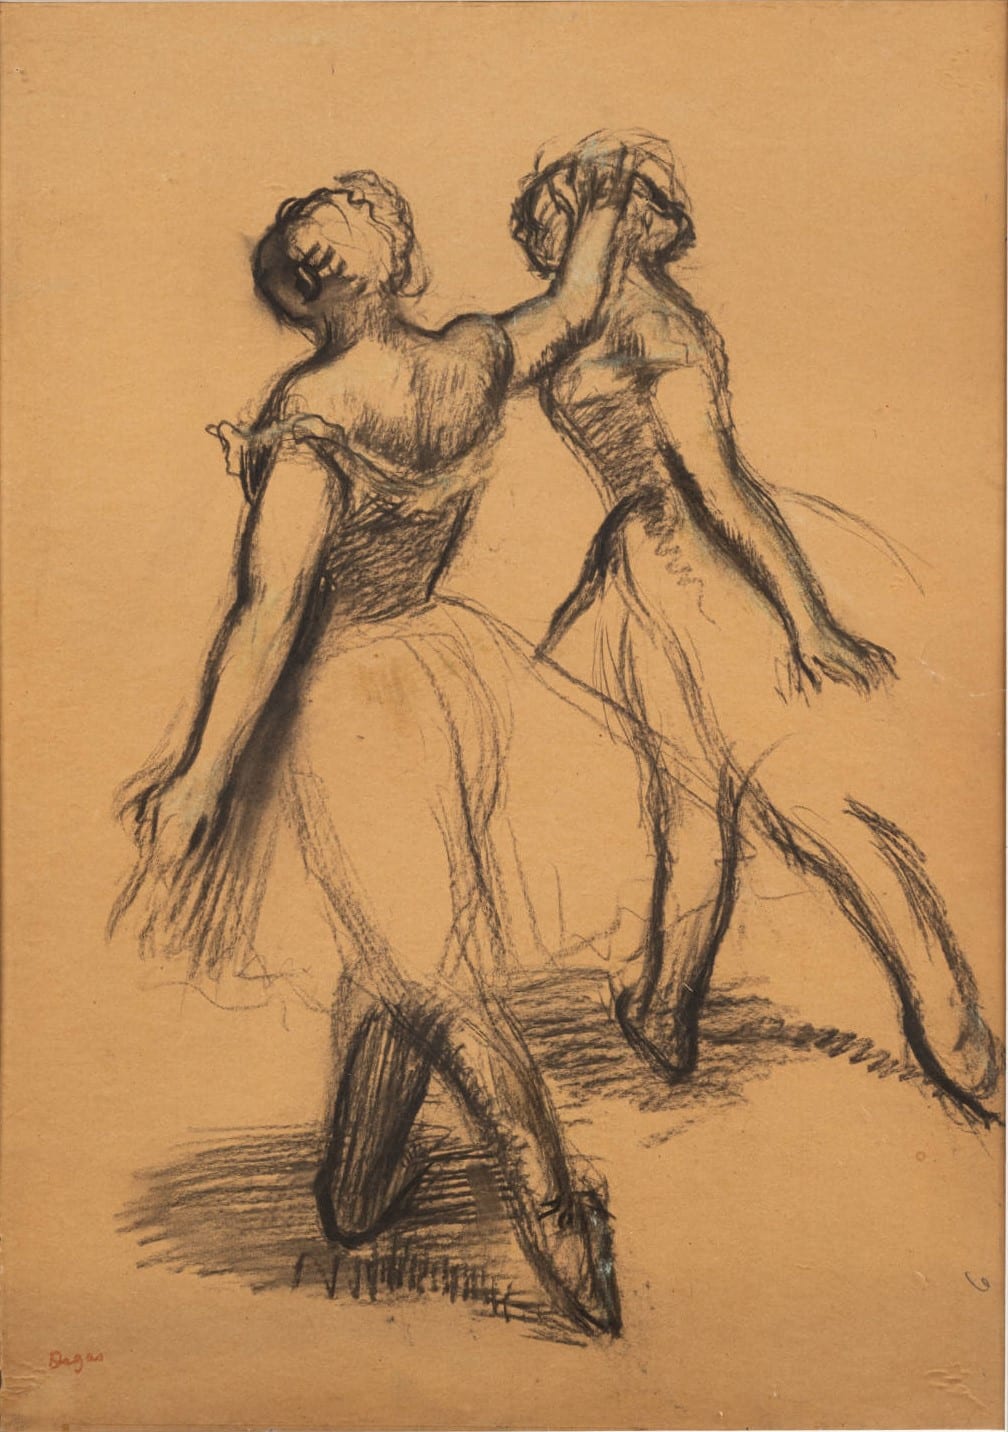 Estimation Danseuses de Degas fusain et pastel